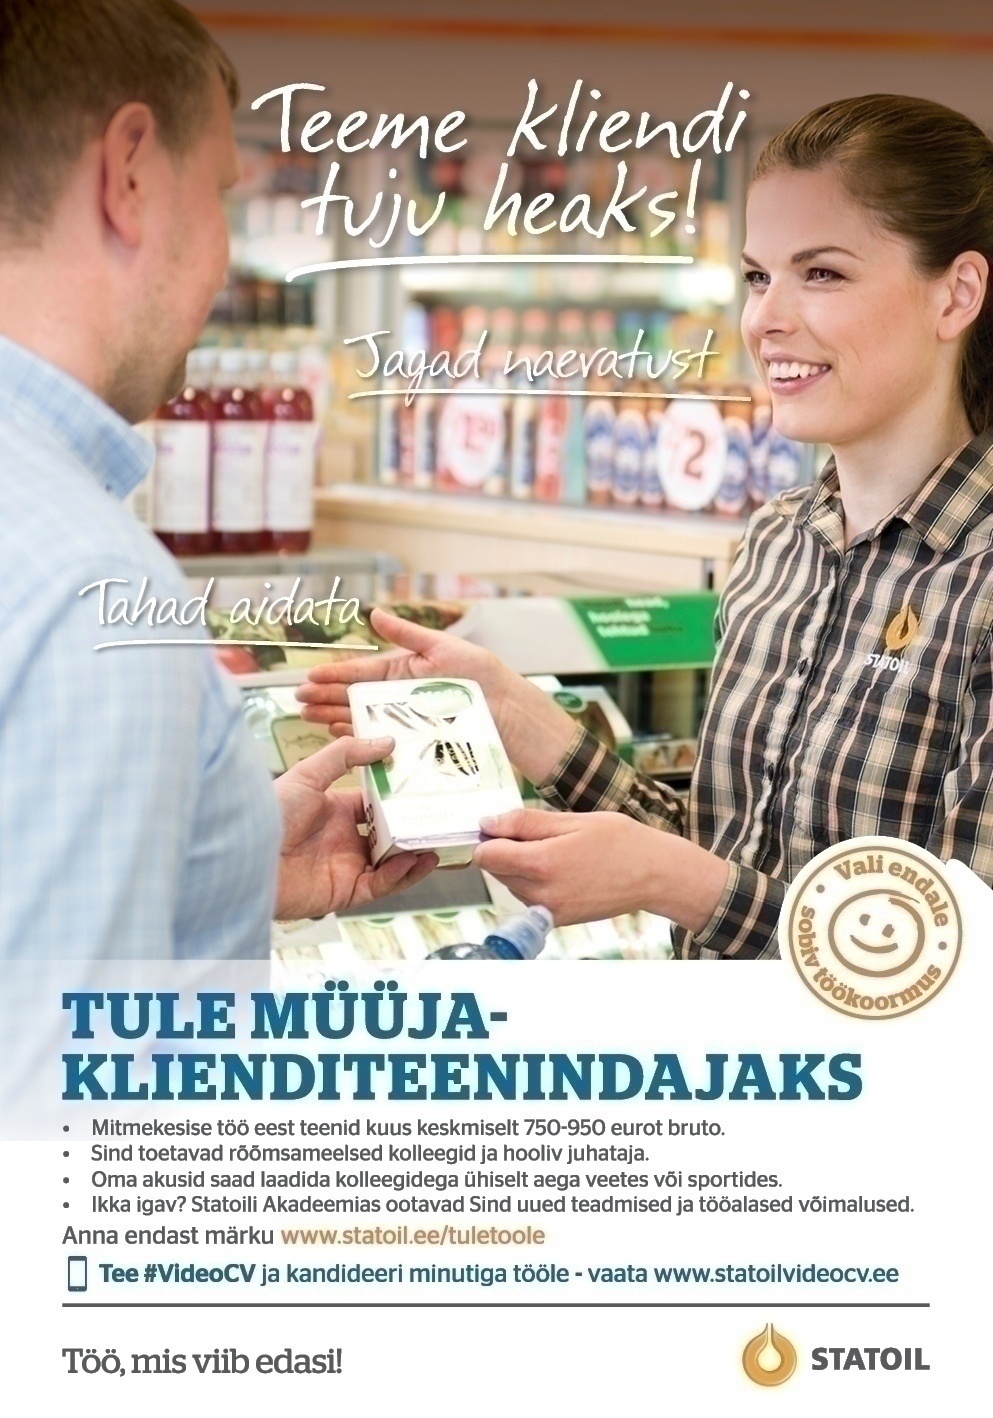 Circle K Eesti AS Müüja-klienditeenindaja Tallinna Sikupilli teenindusjaama